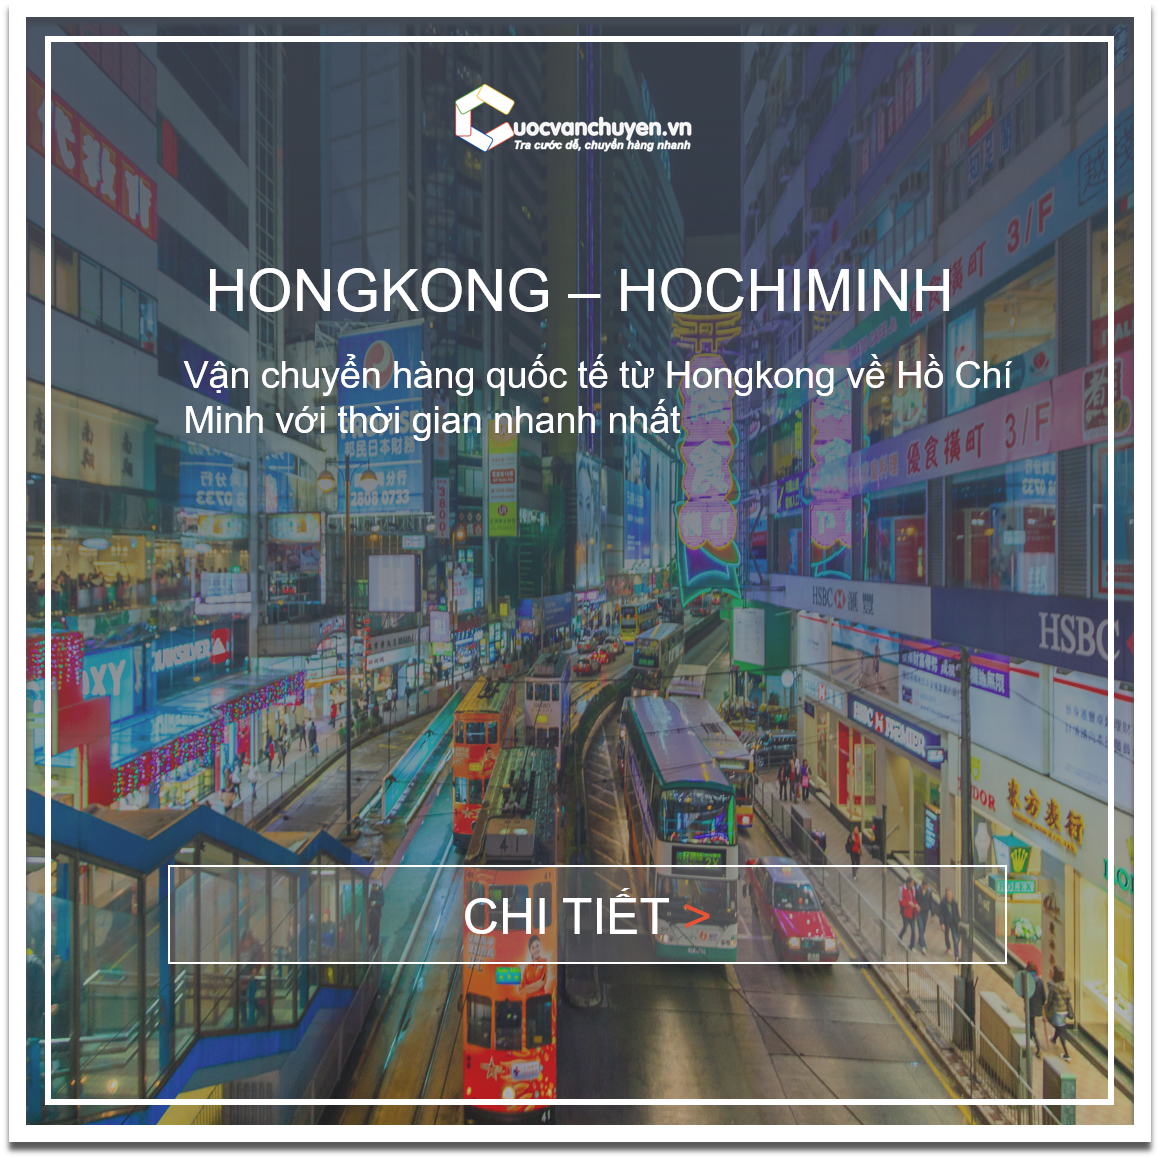 hongkong-hochiminh-cuocvanchuyen_vn(1).png